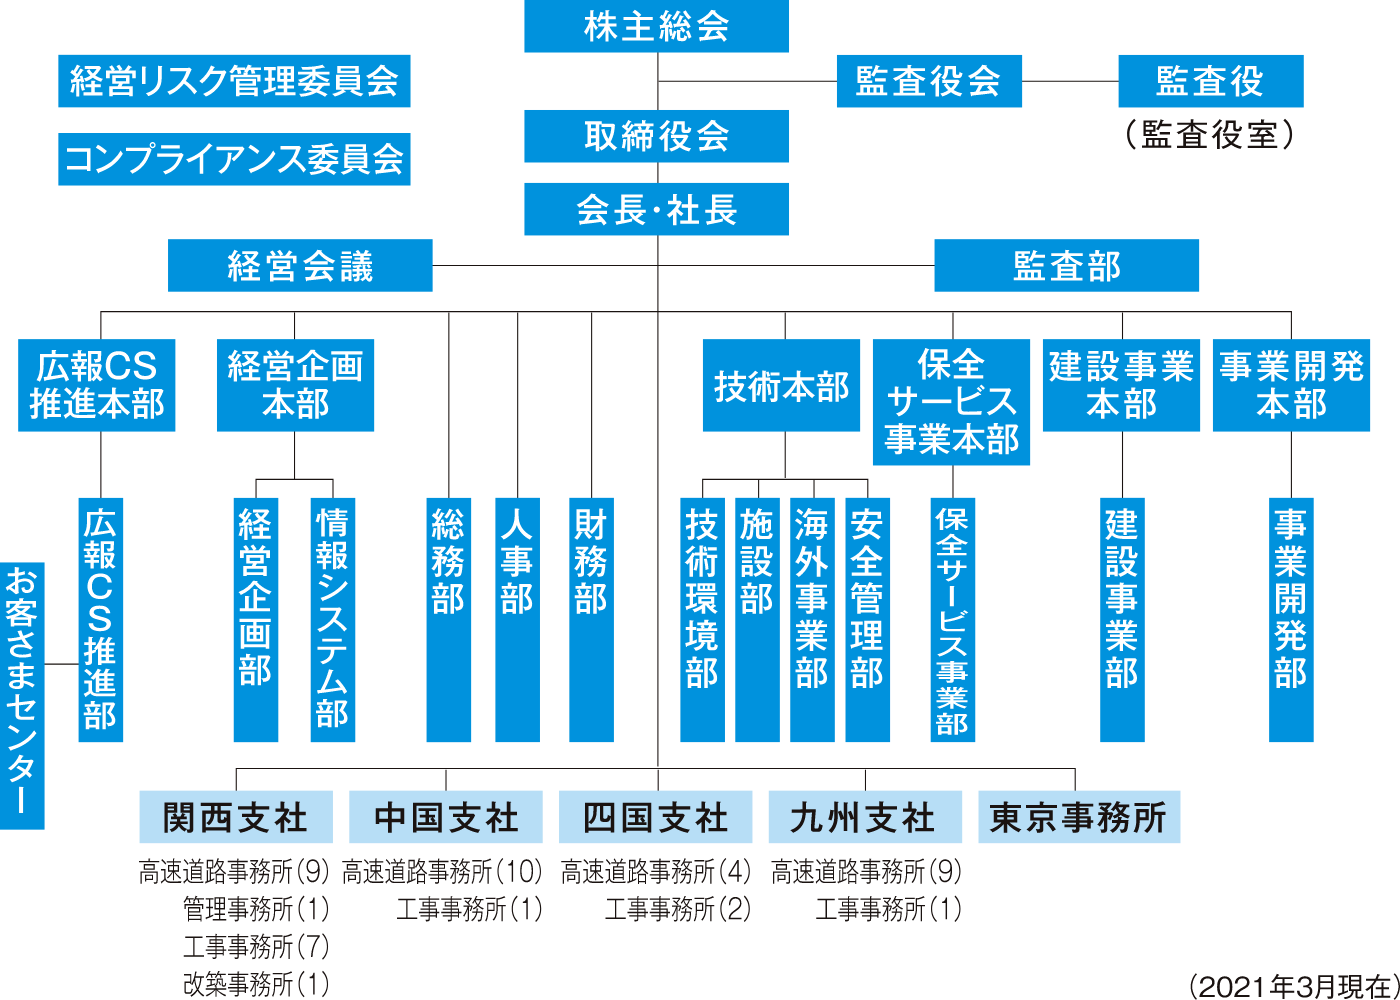 NEXCO西日本会社概要・組織図